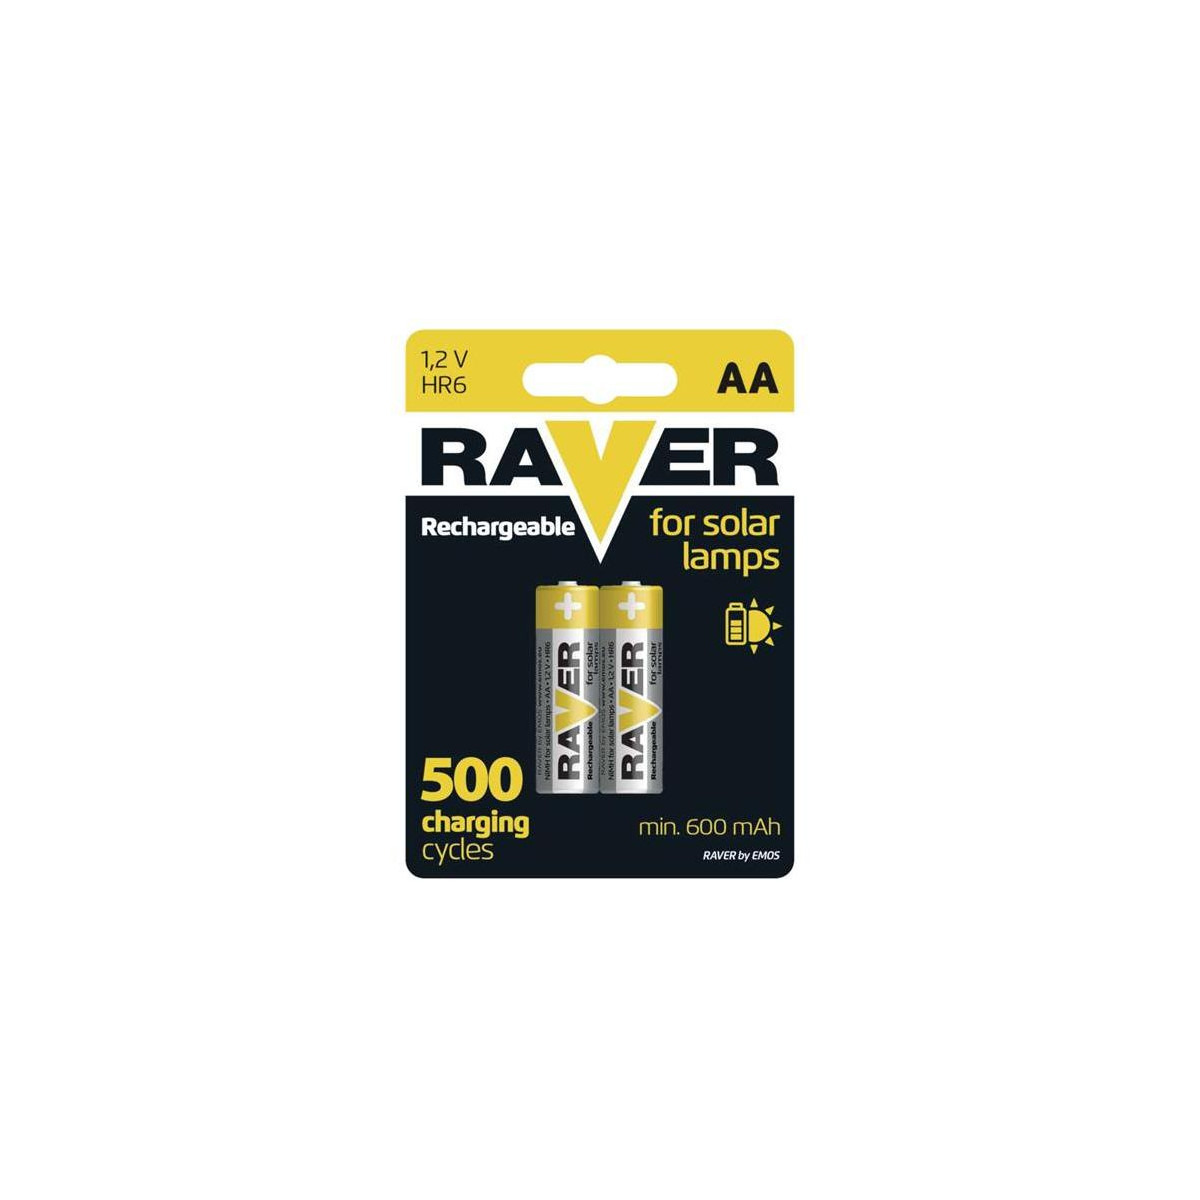 More about Baterie AA (R6) nabíjecí 1,2V/600mAh RAVER solar 2ks